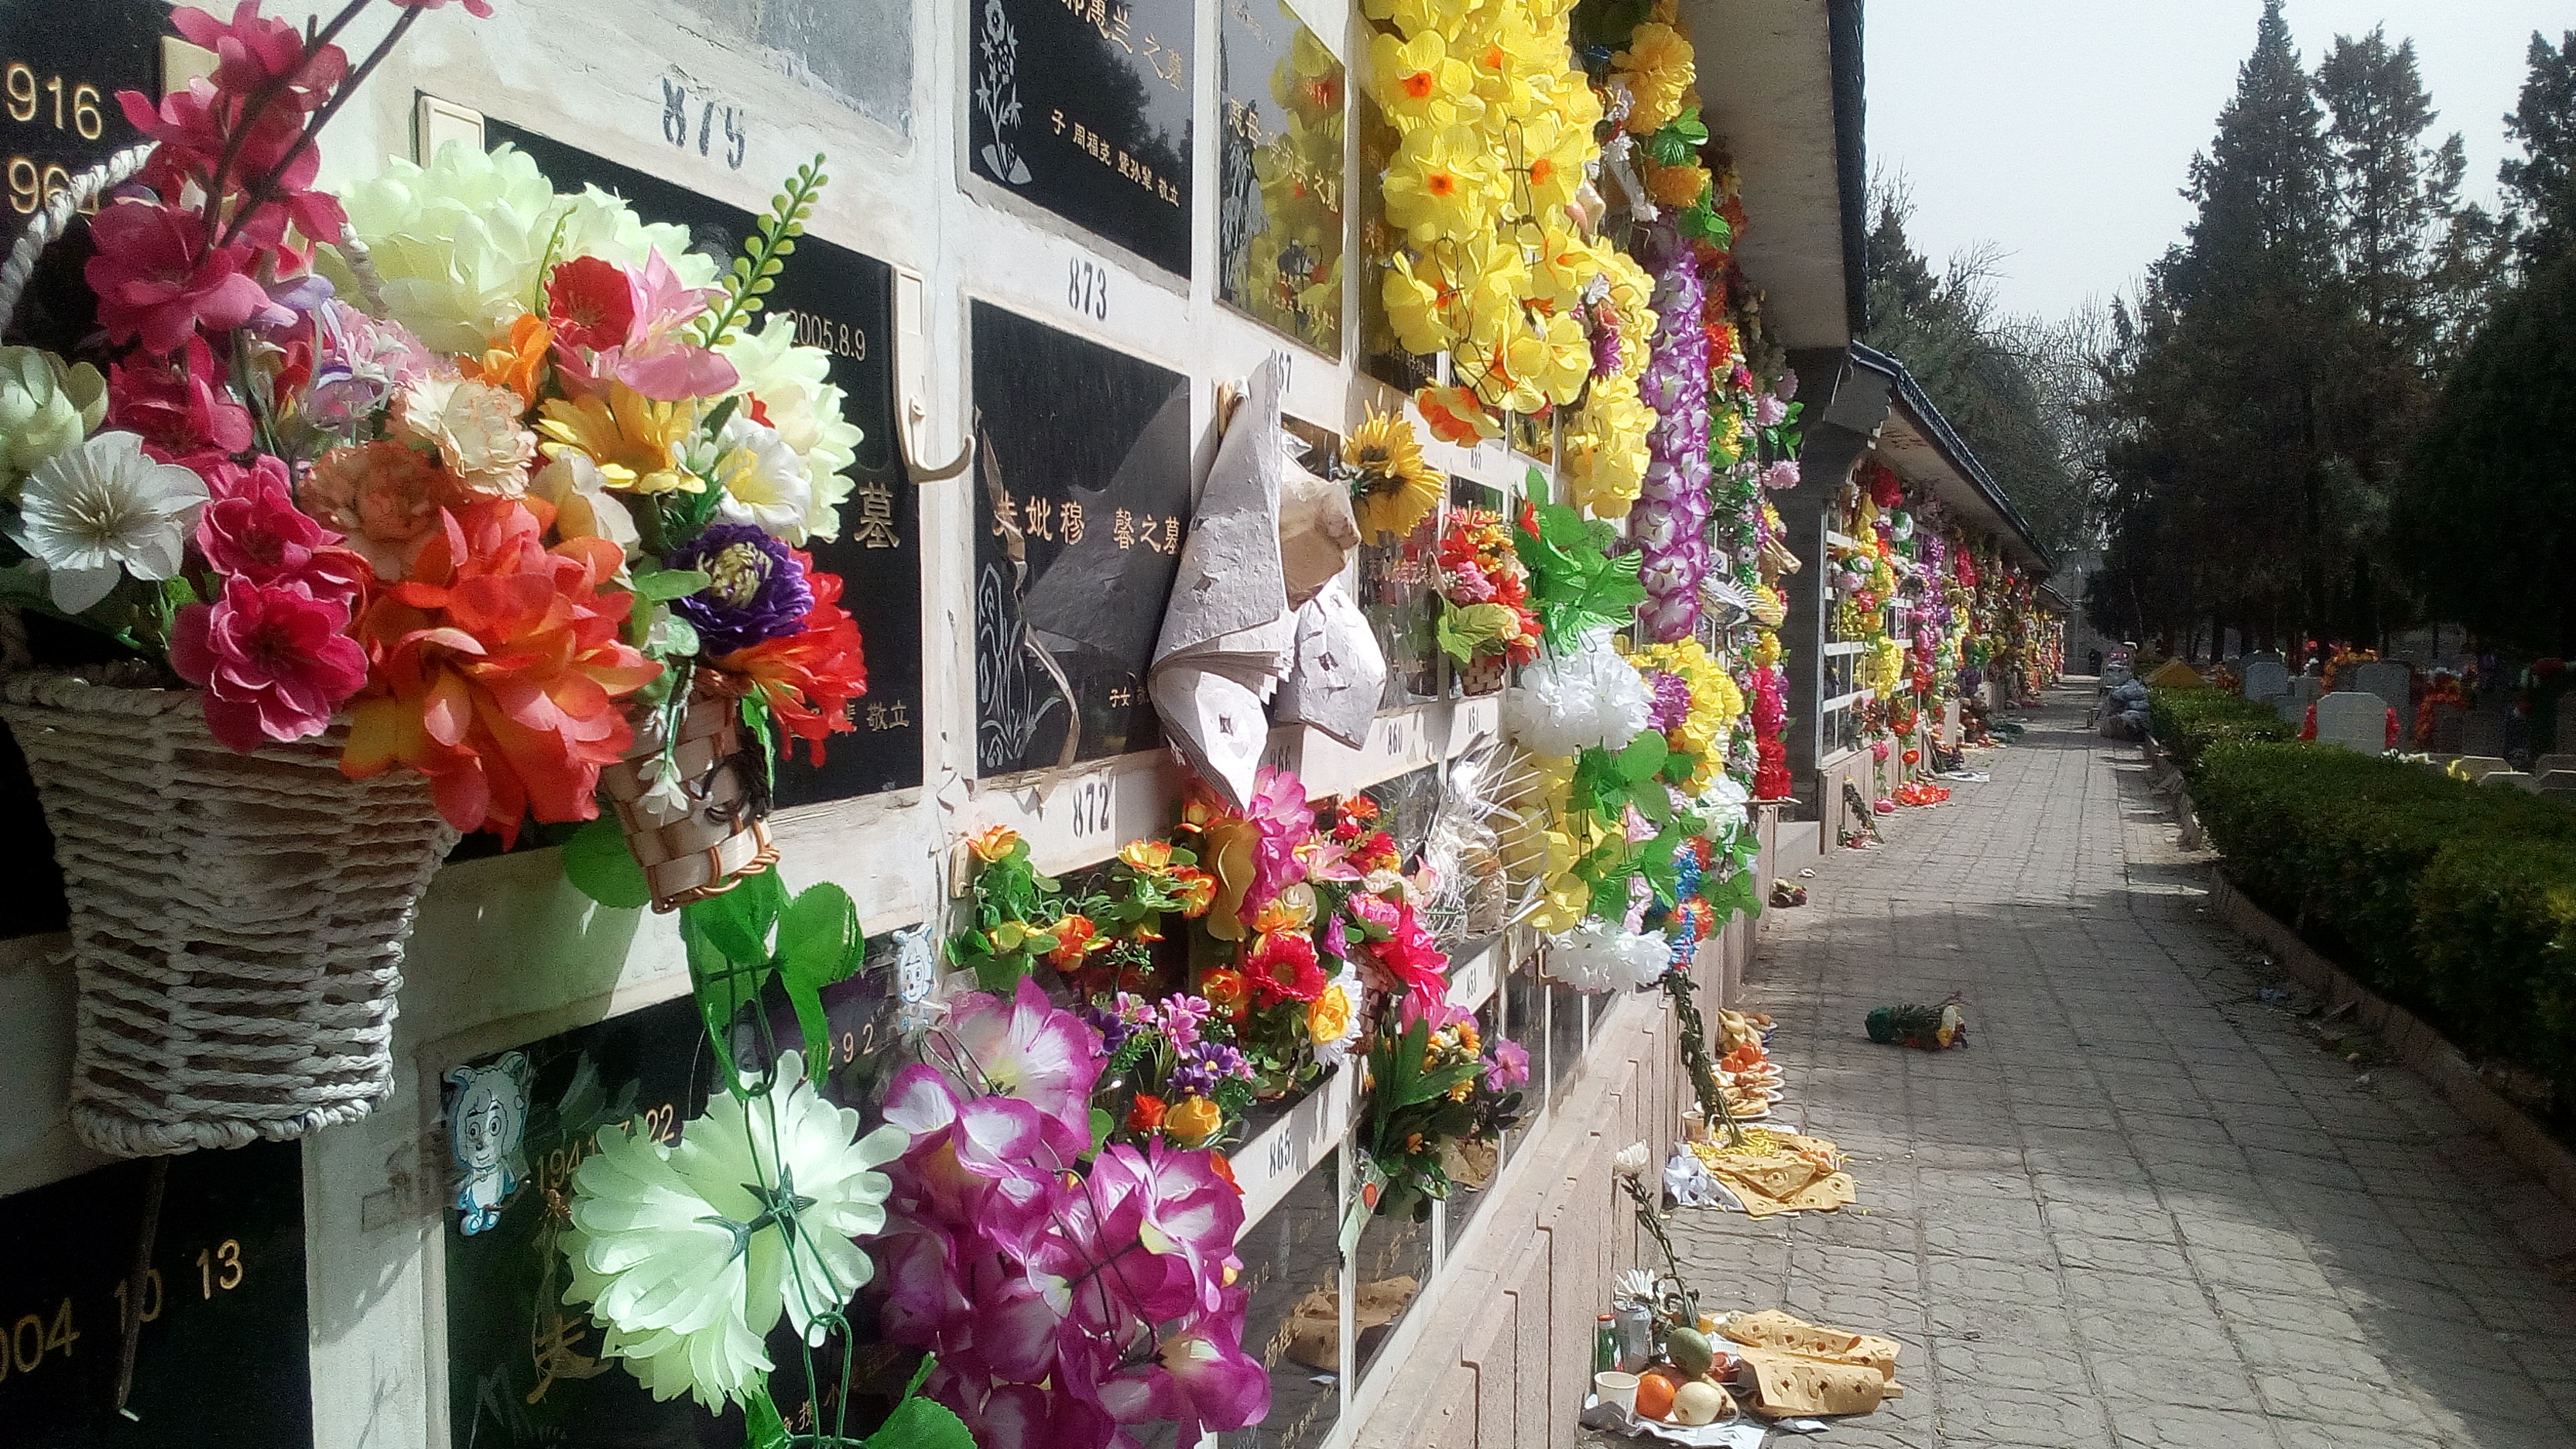 Durante el 4 o 5 de abril de cada año los chinos limpian las tumbas y llevan comida, bebidas y flores a sus difuntos.